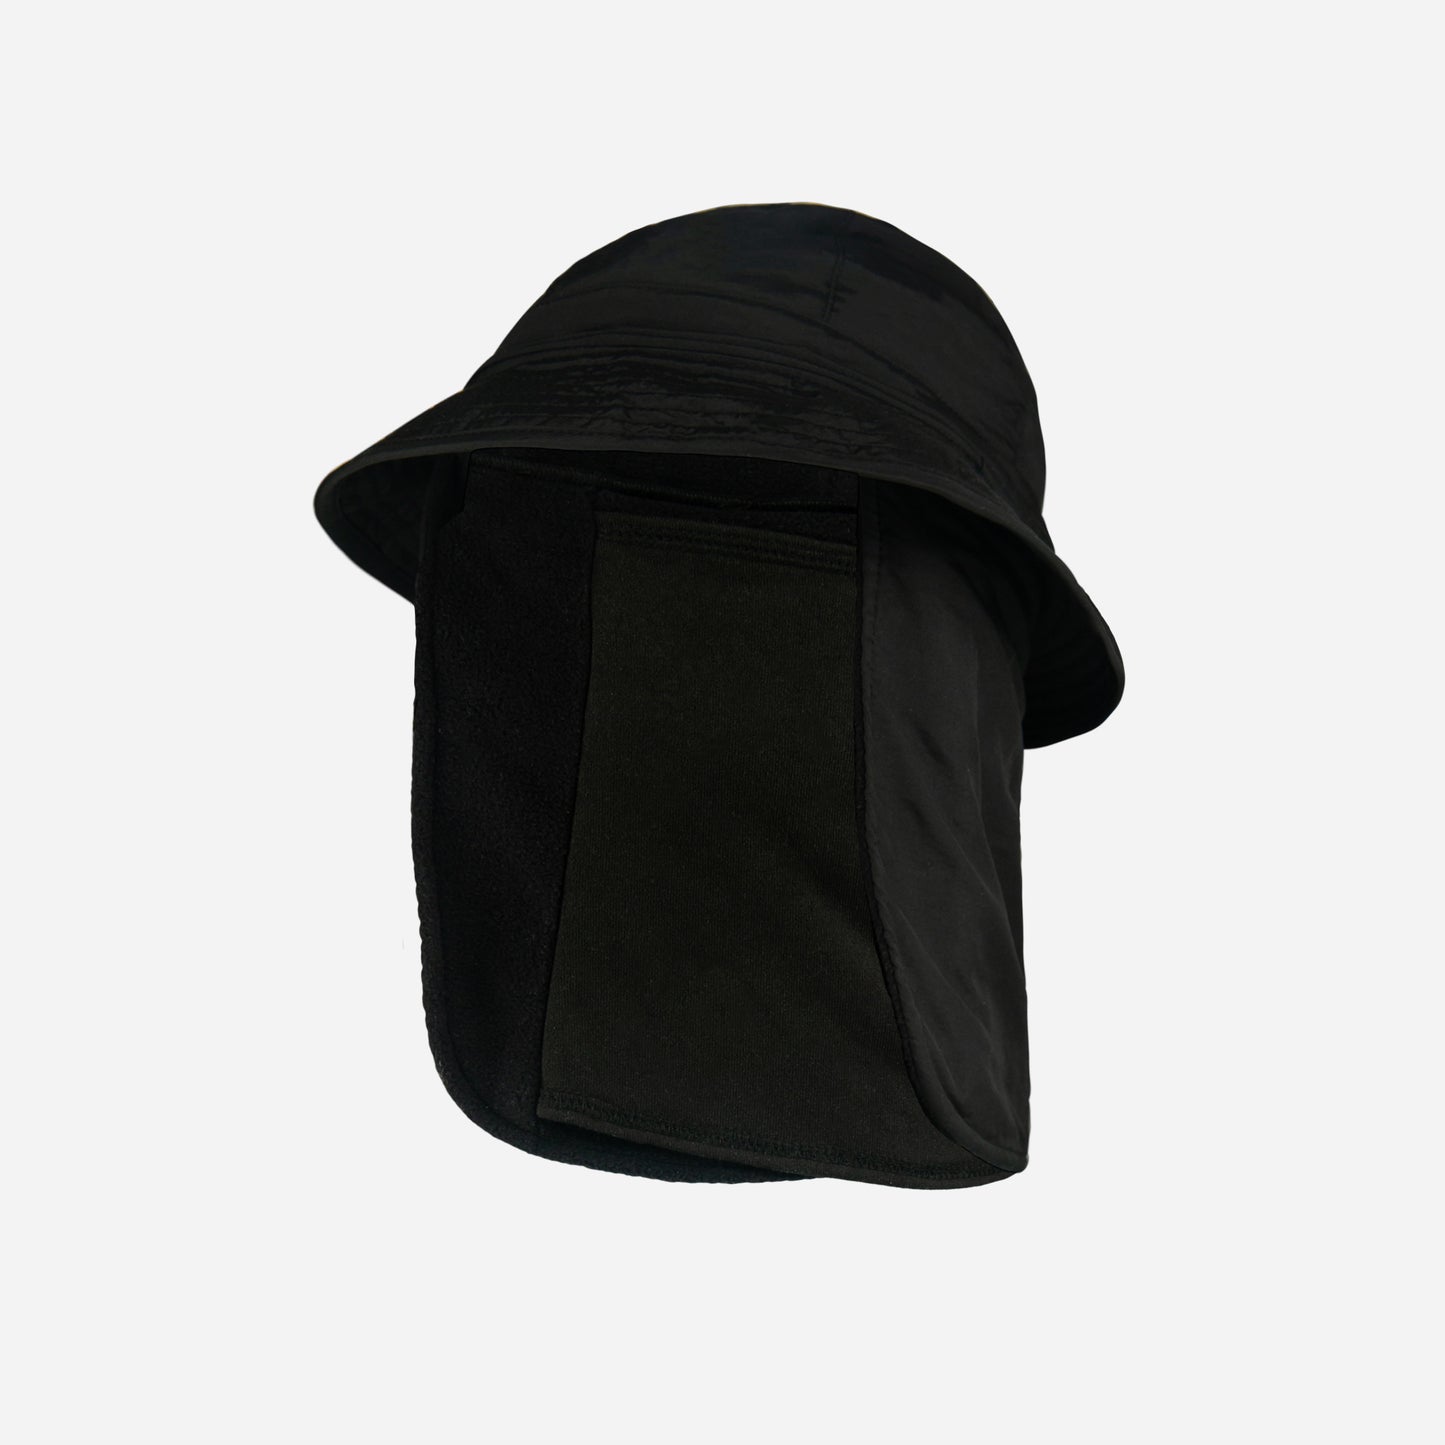 Airhole 10K Softshell Bucket Tech Hat